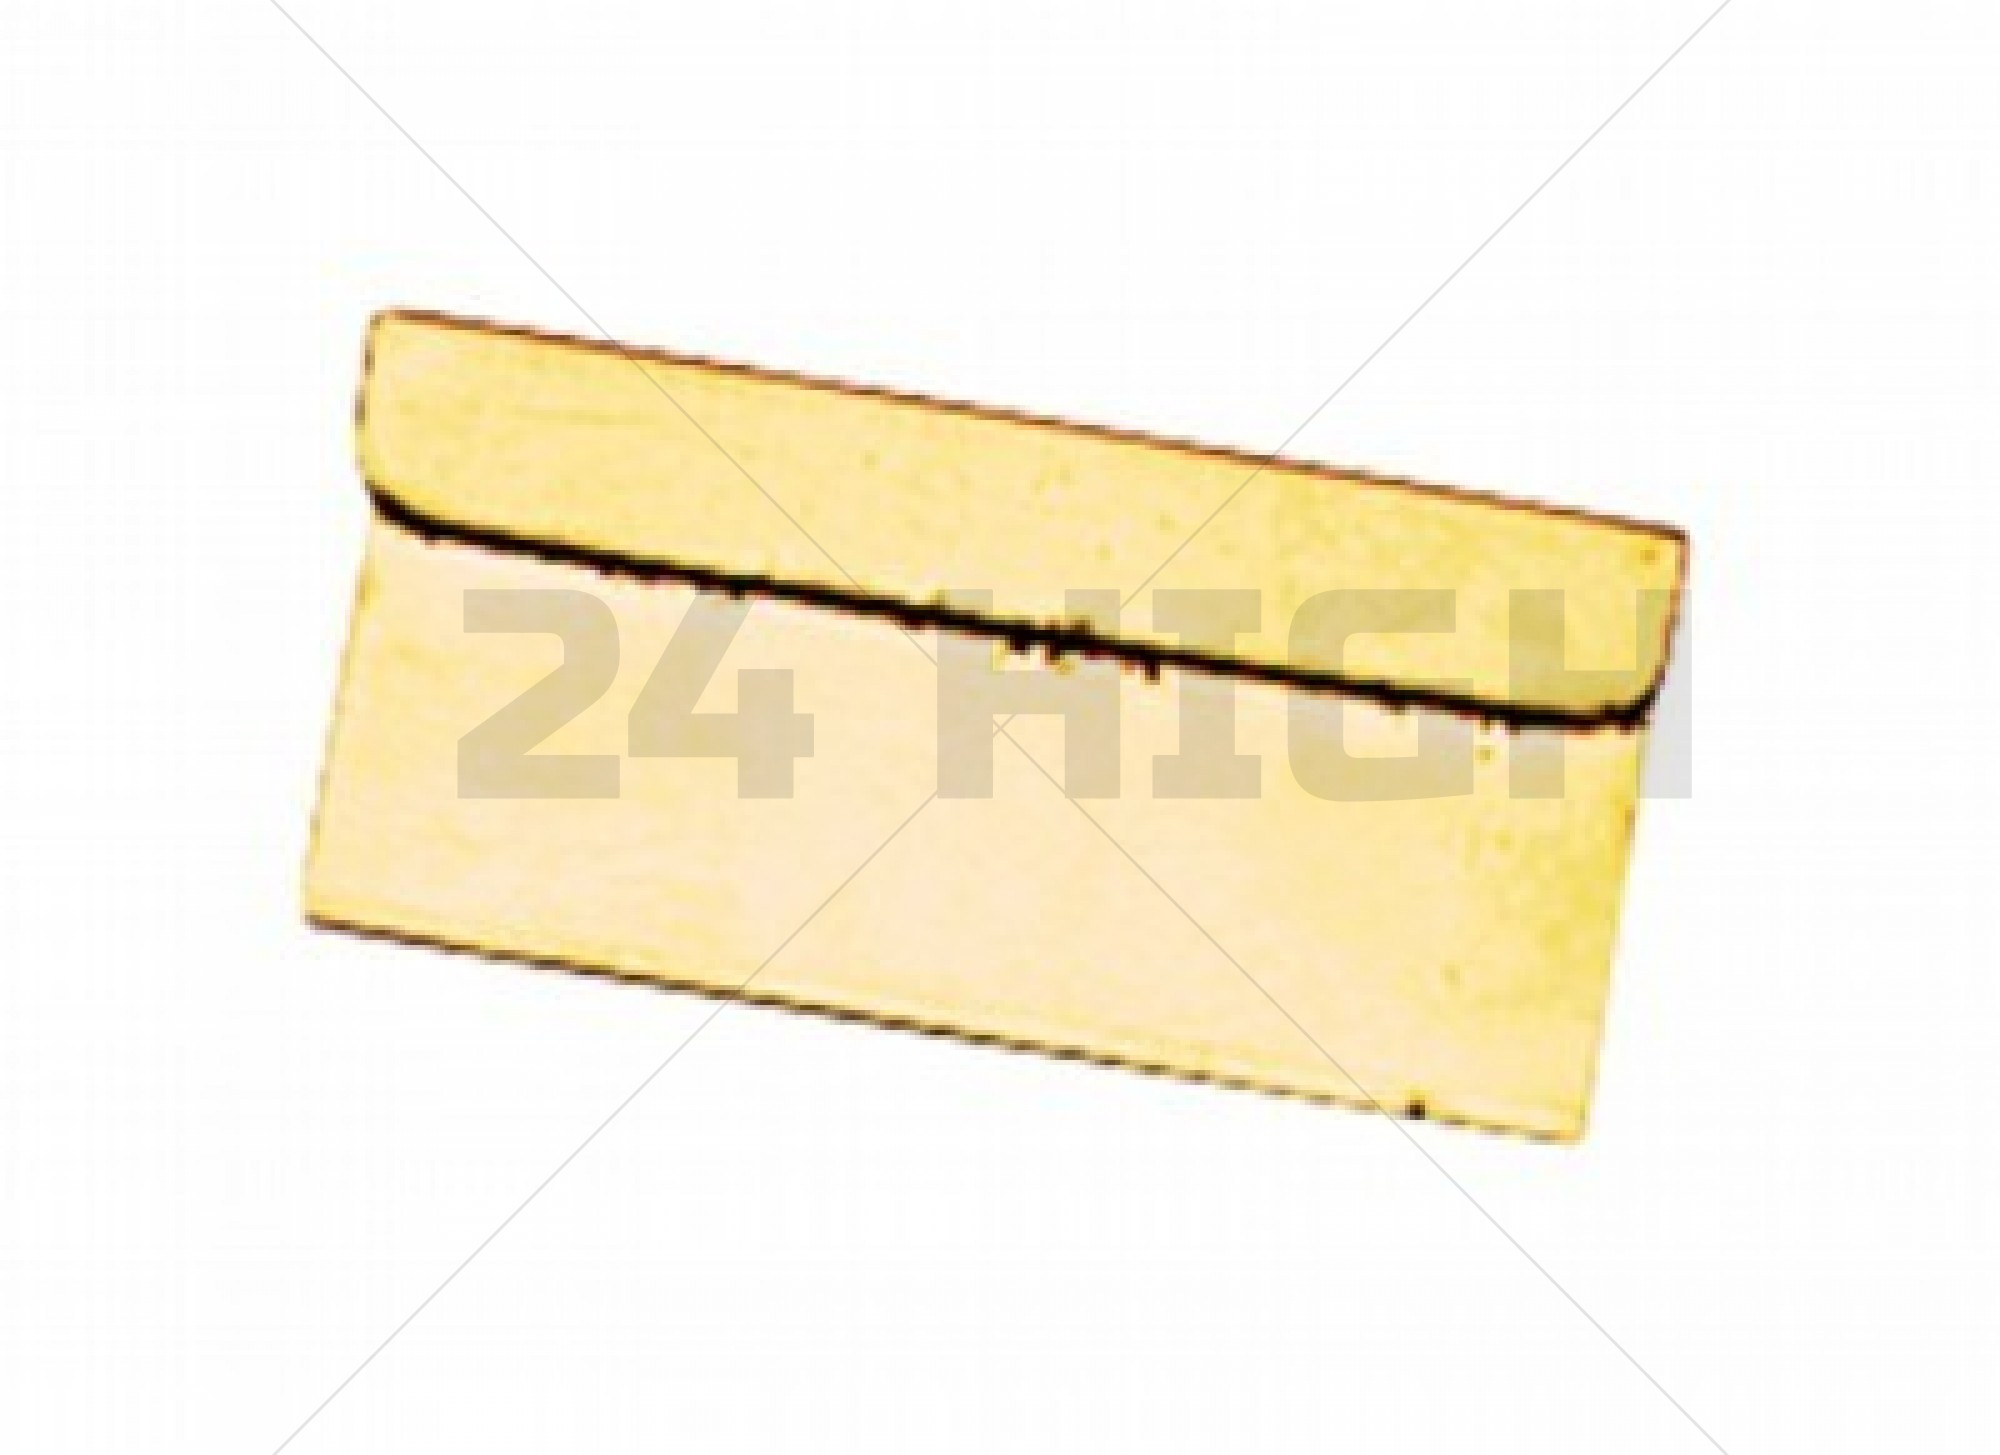 Oro Cuchilla de afeitar (Razor Blade Gold)